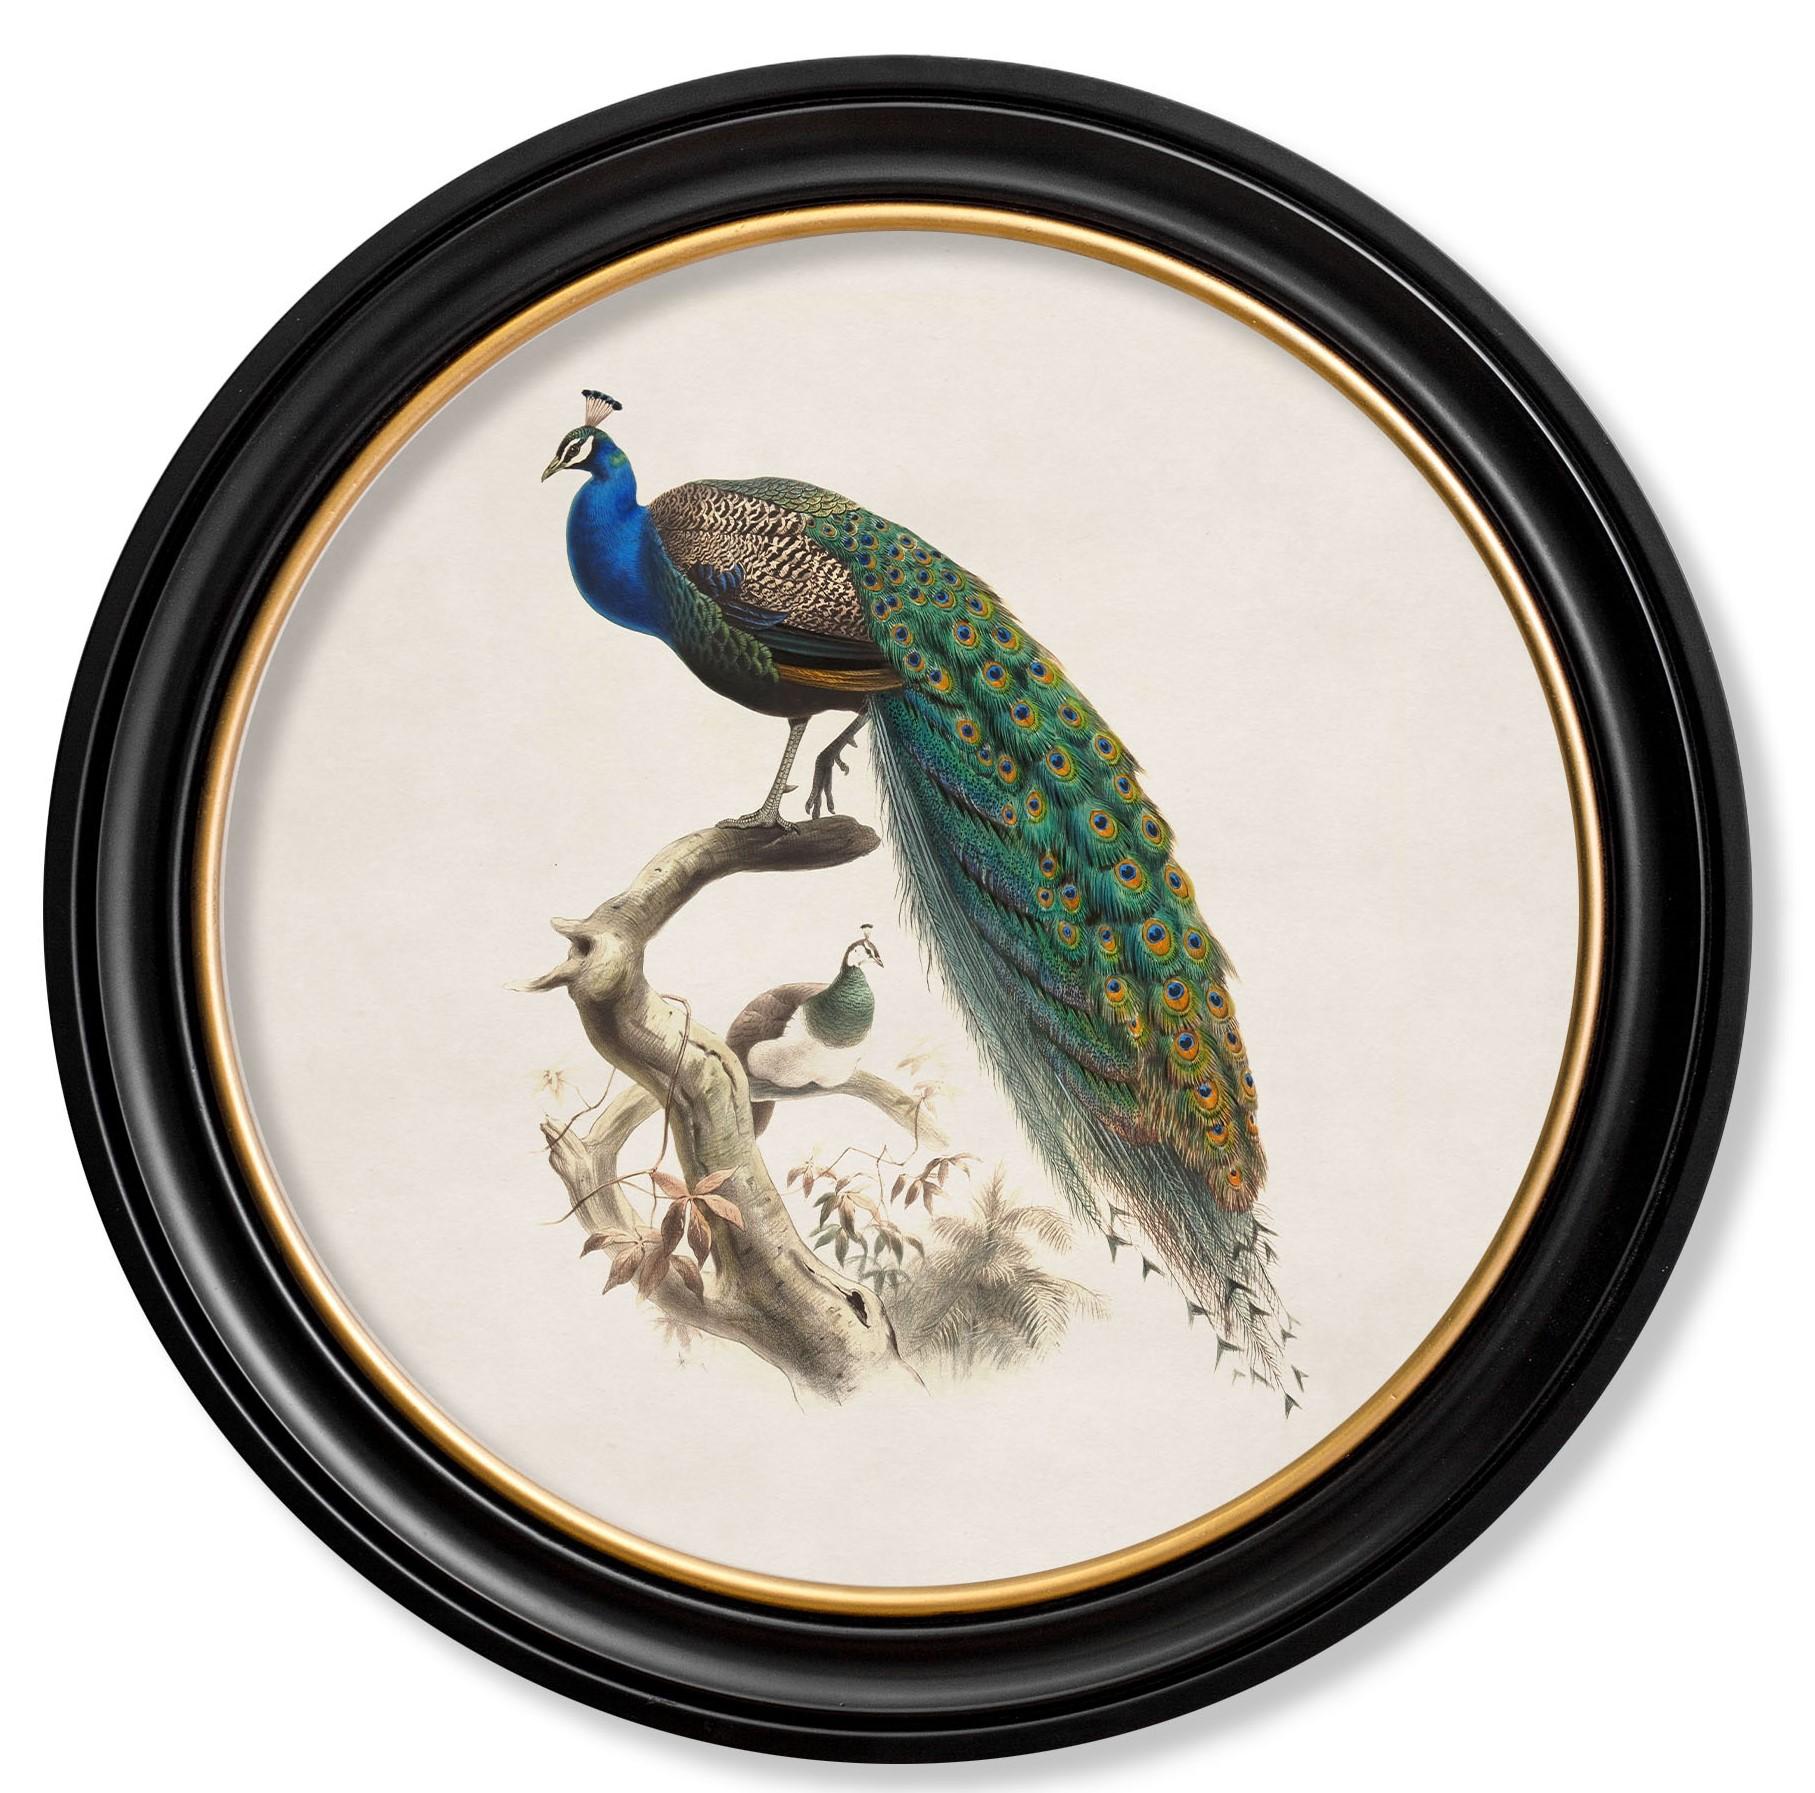 peacock history